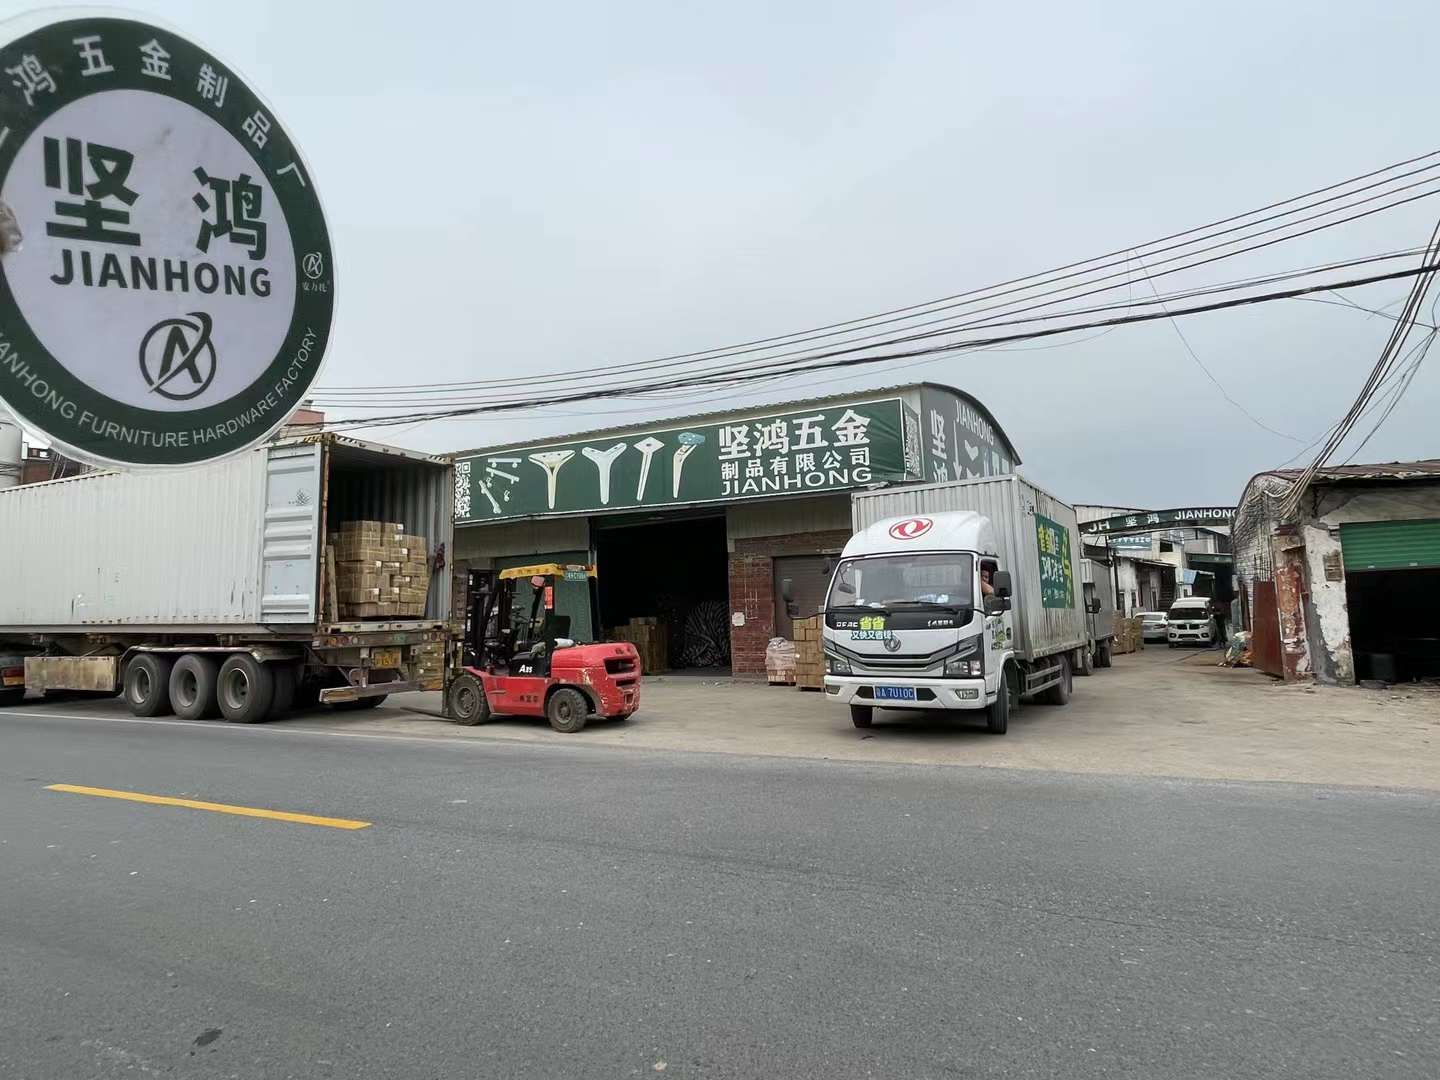 La fábrica de patas de sofá KINHONG carga el contenedor de 40 HQ y tres vagones de patas de muebles al mismo tiempo.